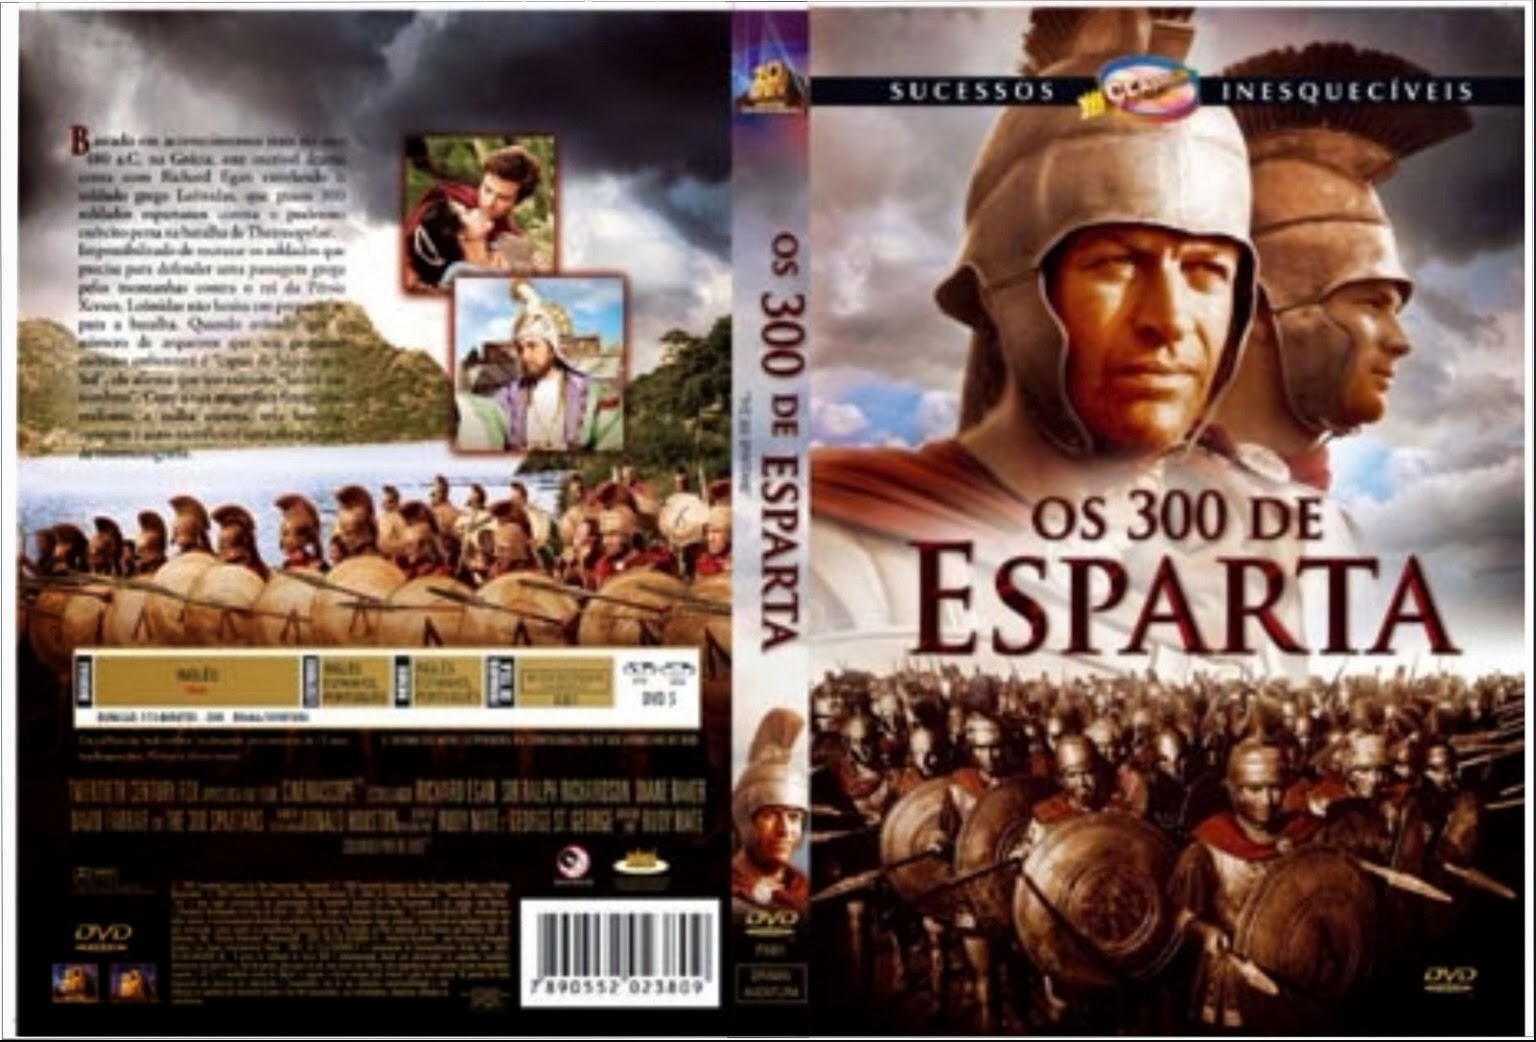 Leónidas e os 300 espartanos que afinal eram mais